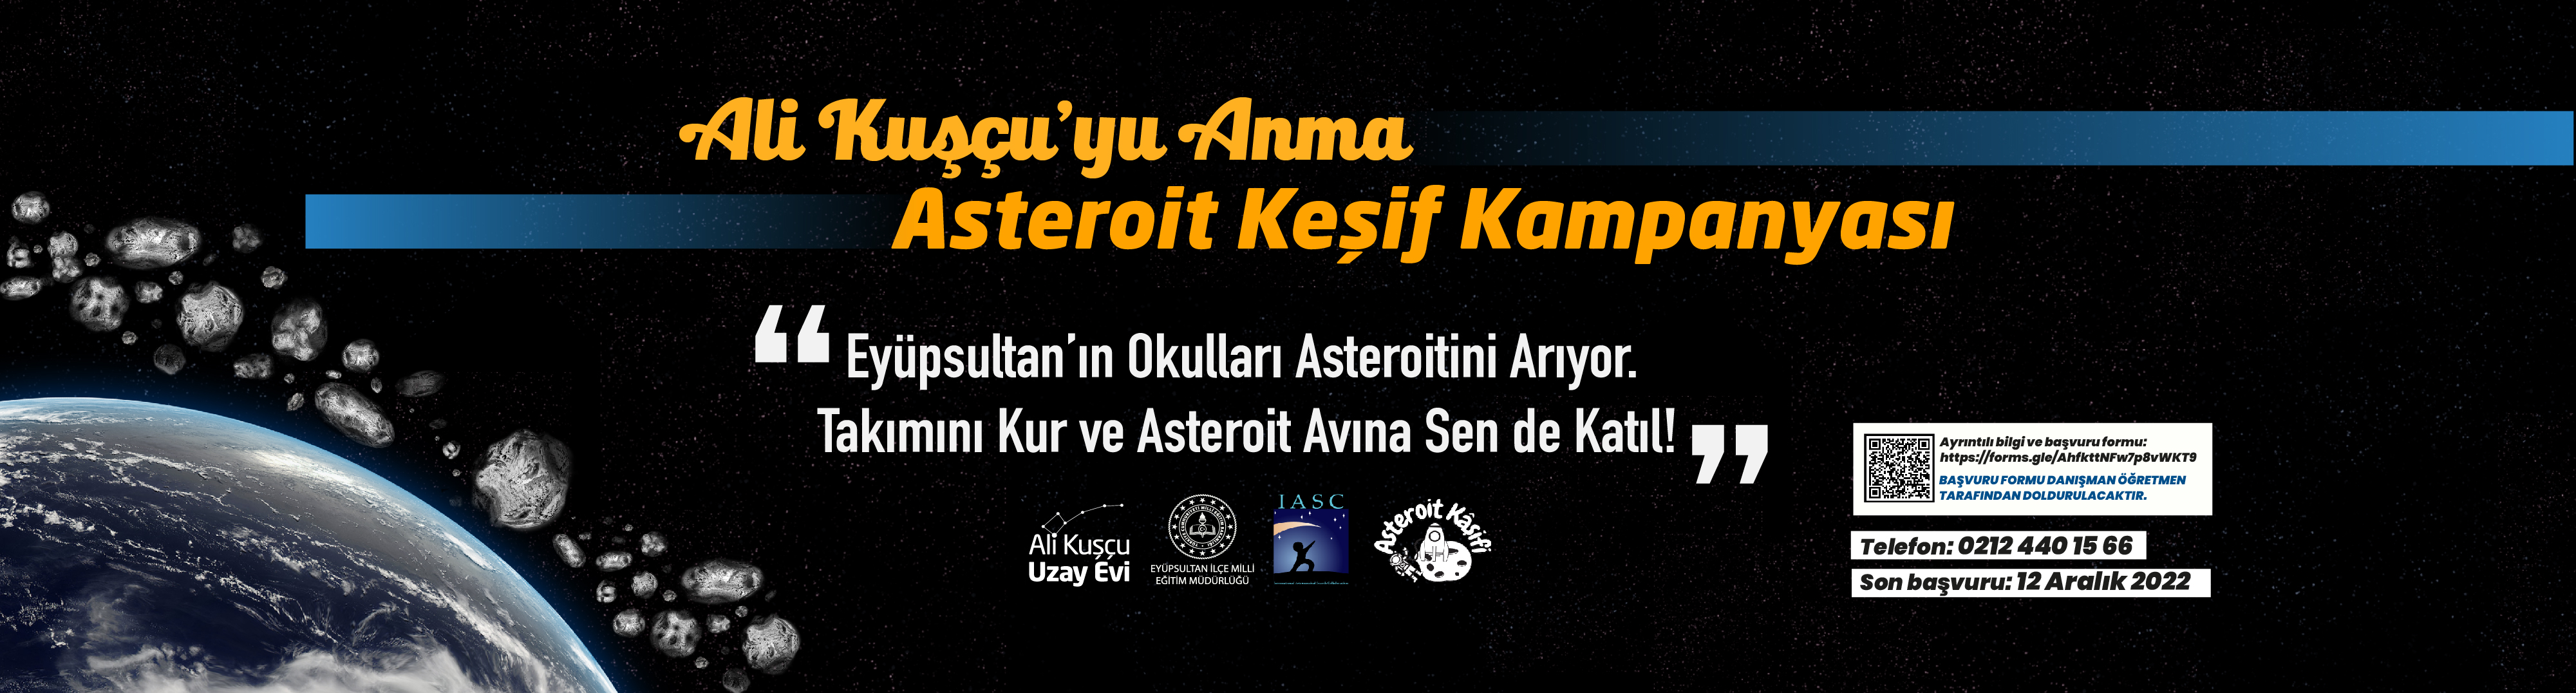 Asteroit Keşif Kampanyası